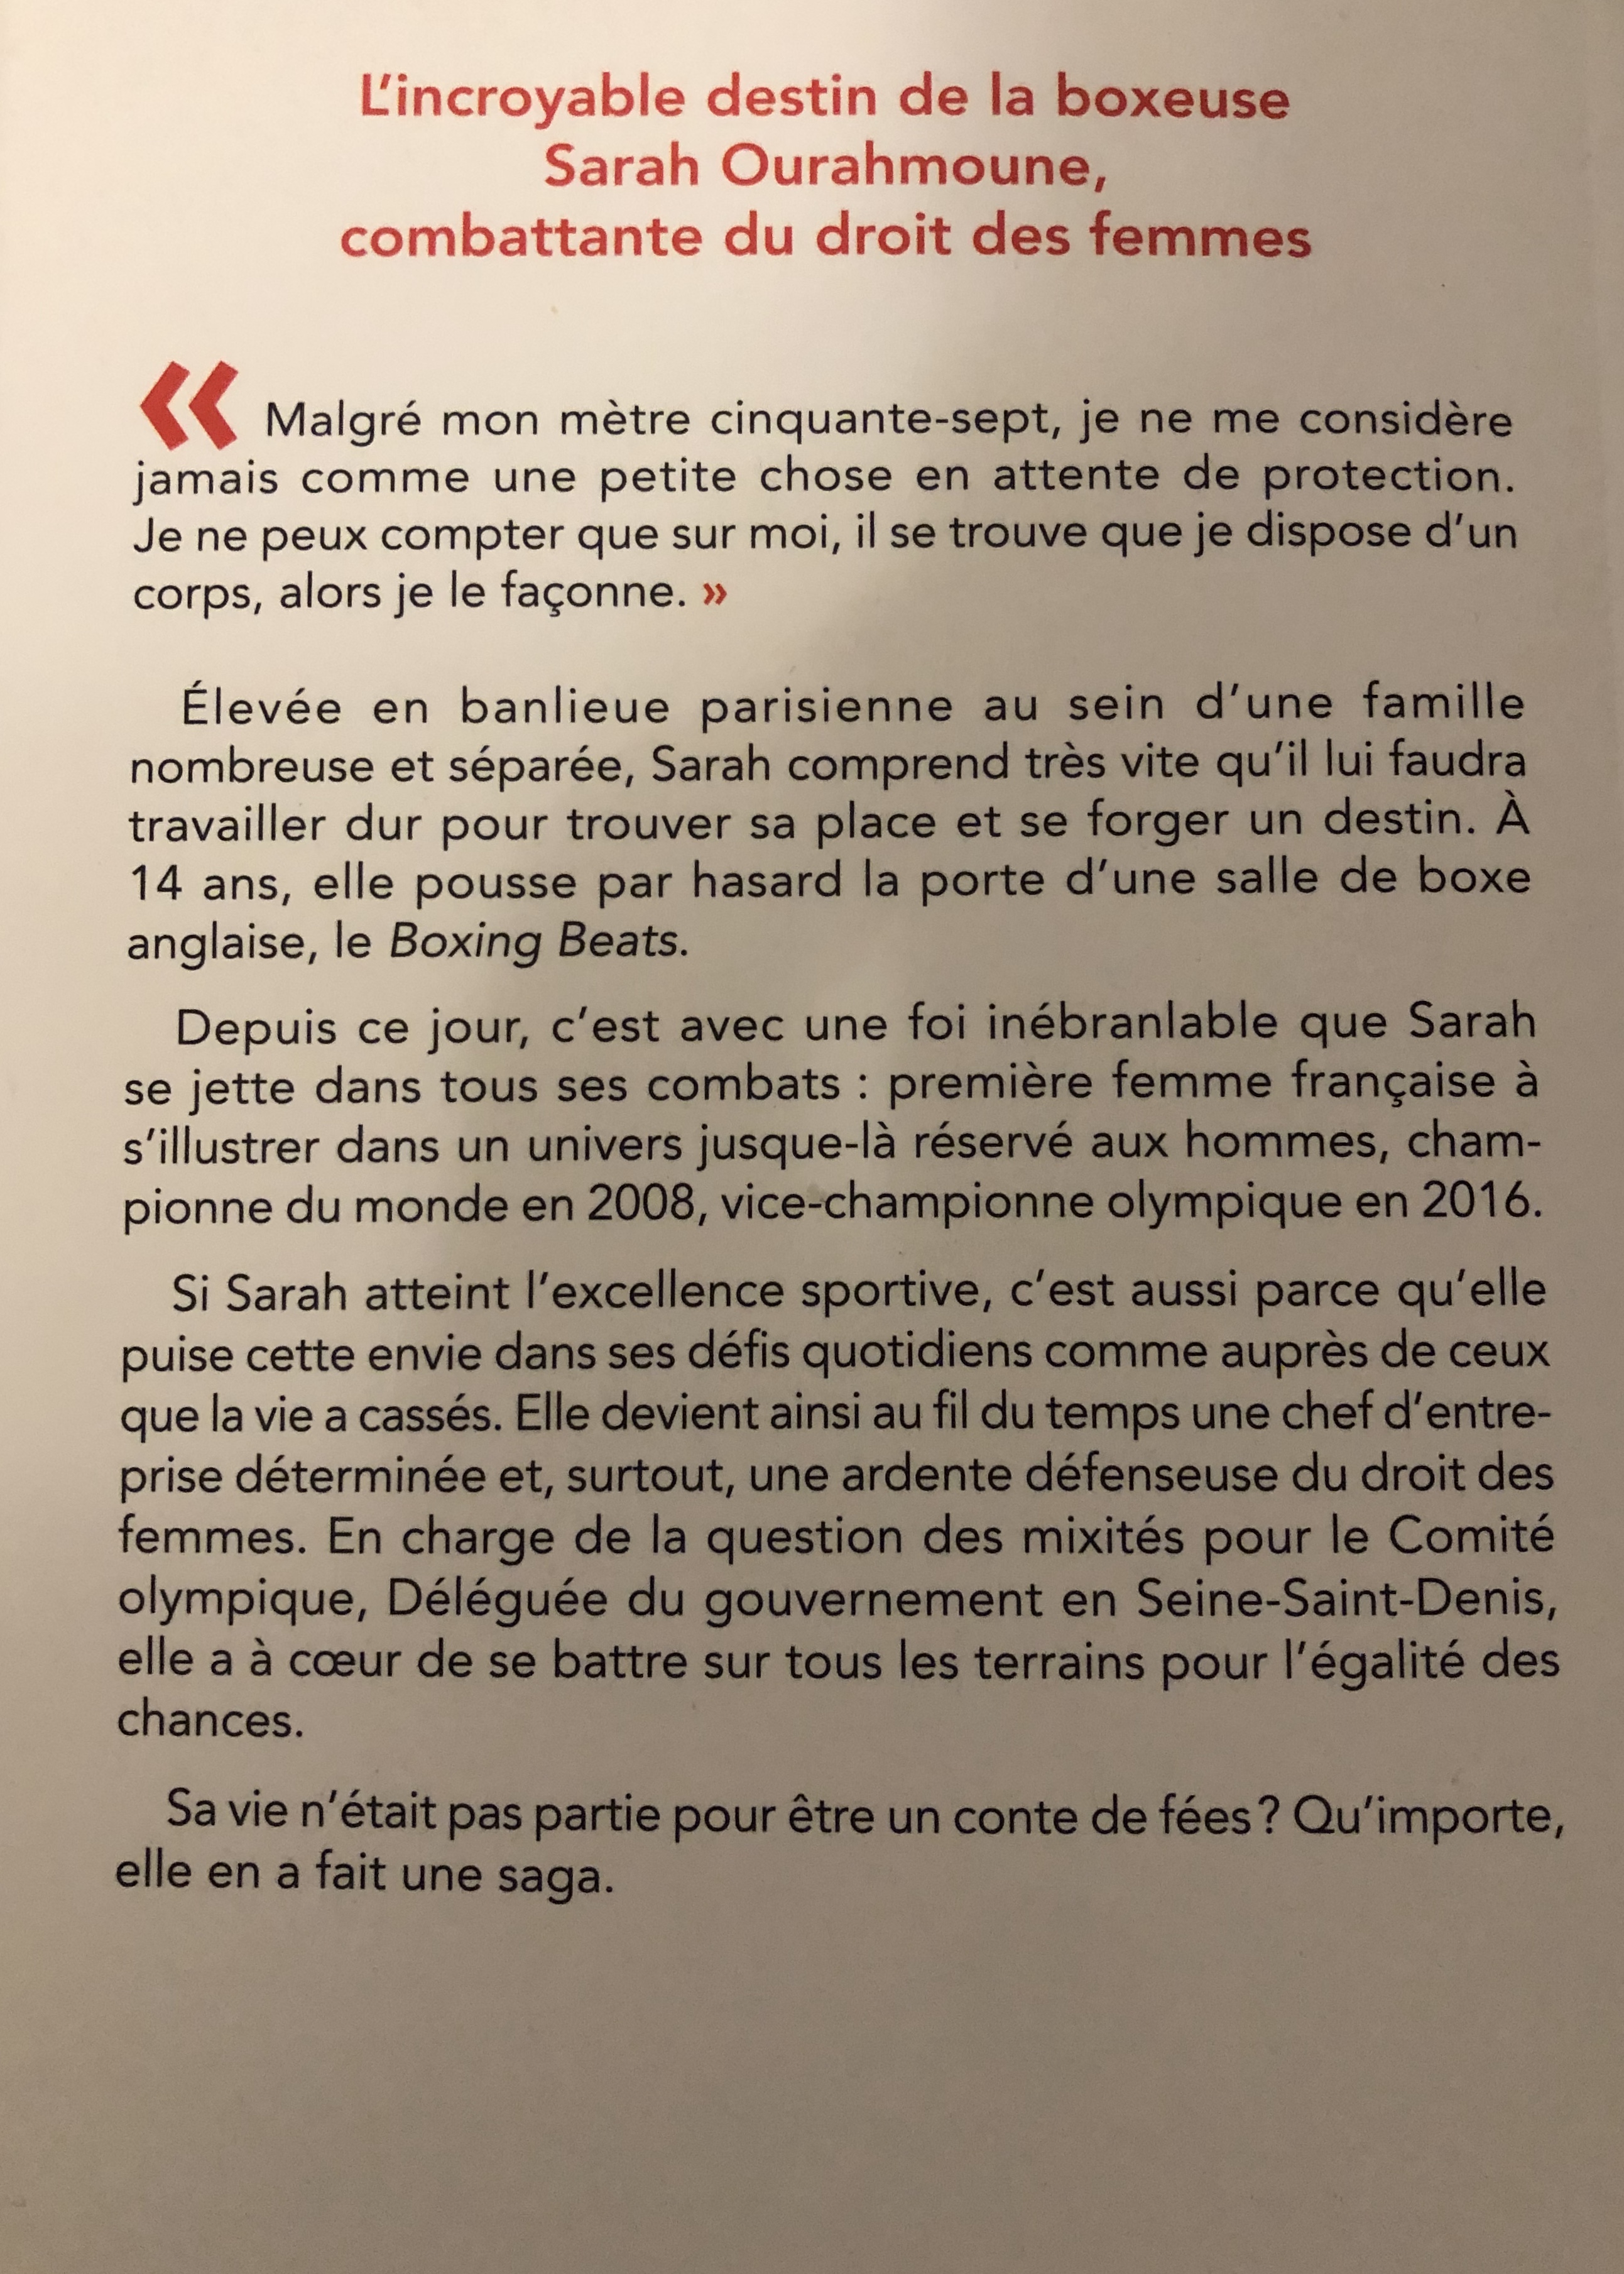 Texte du verso du livre "Mes combats de femme" Editeur : Robert Lafont